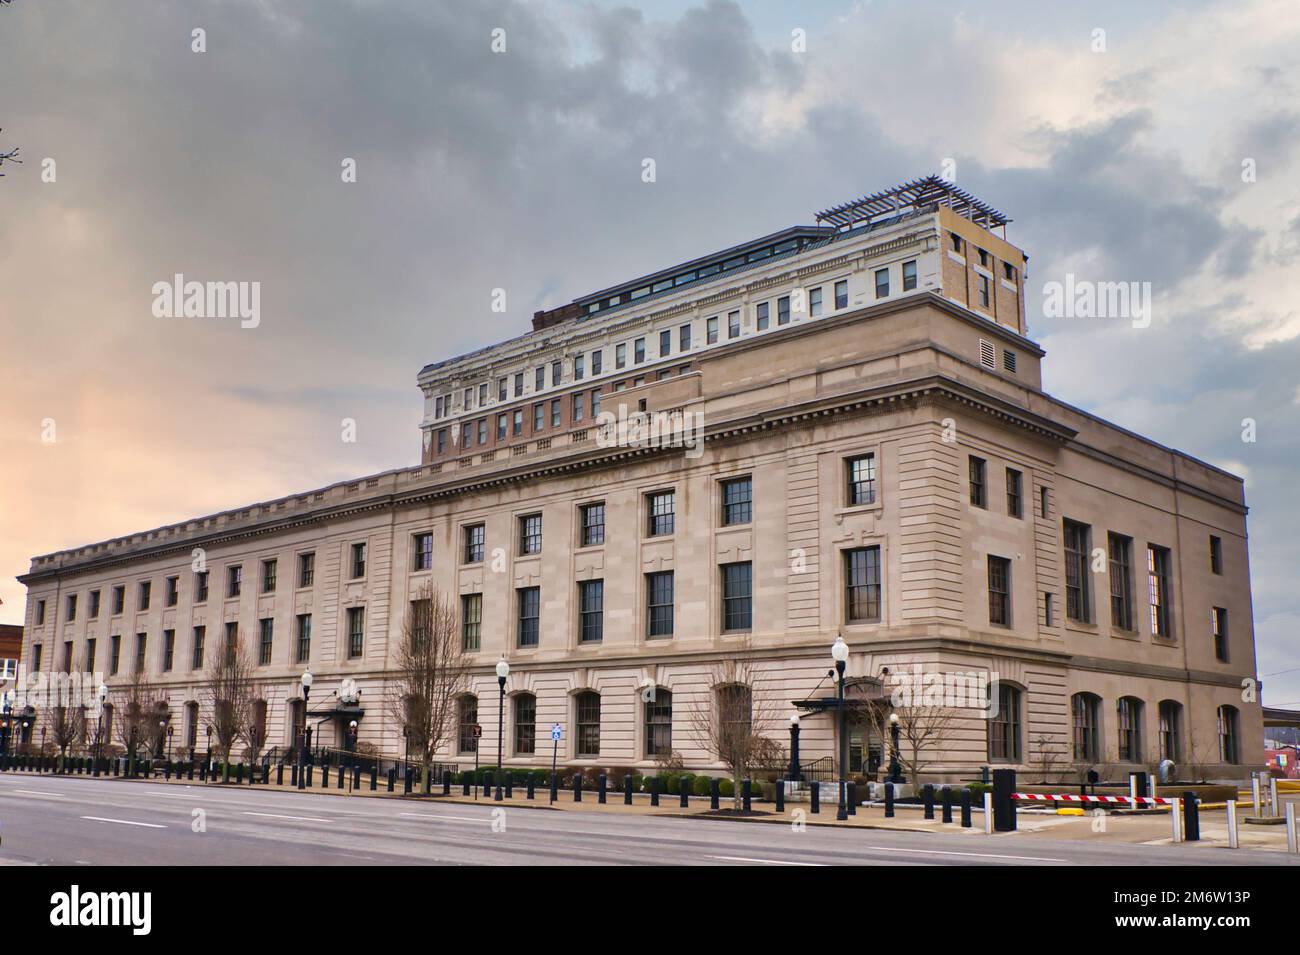 Bâtiment fédéral Sydney L. Christie et États-Unis Palais de justice - Huntington, Virginie de l'Ouest Banque D'Images